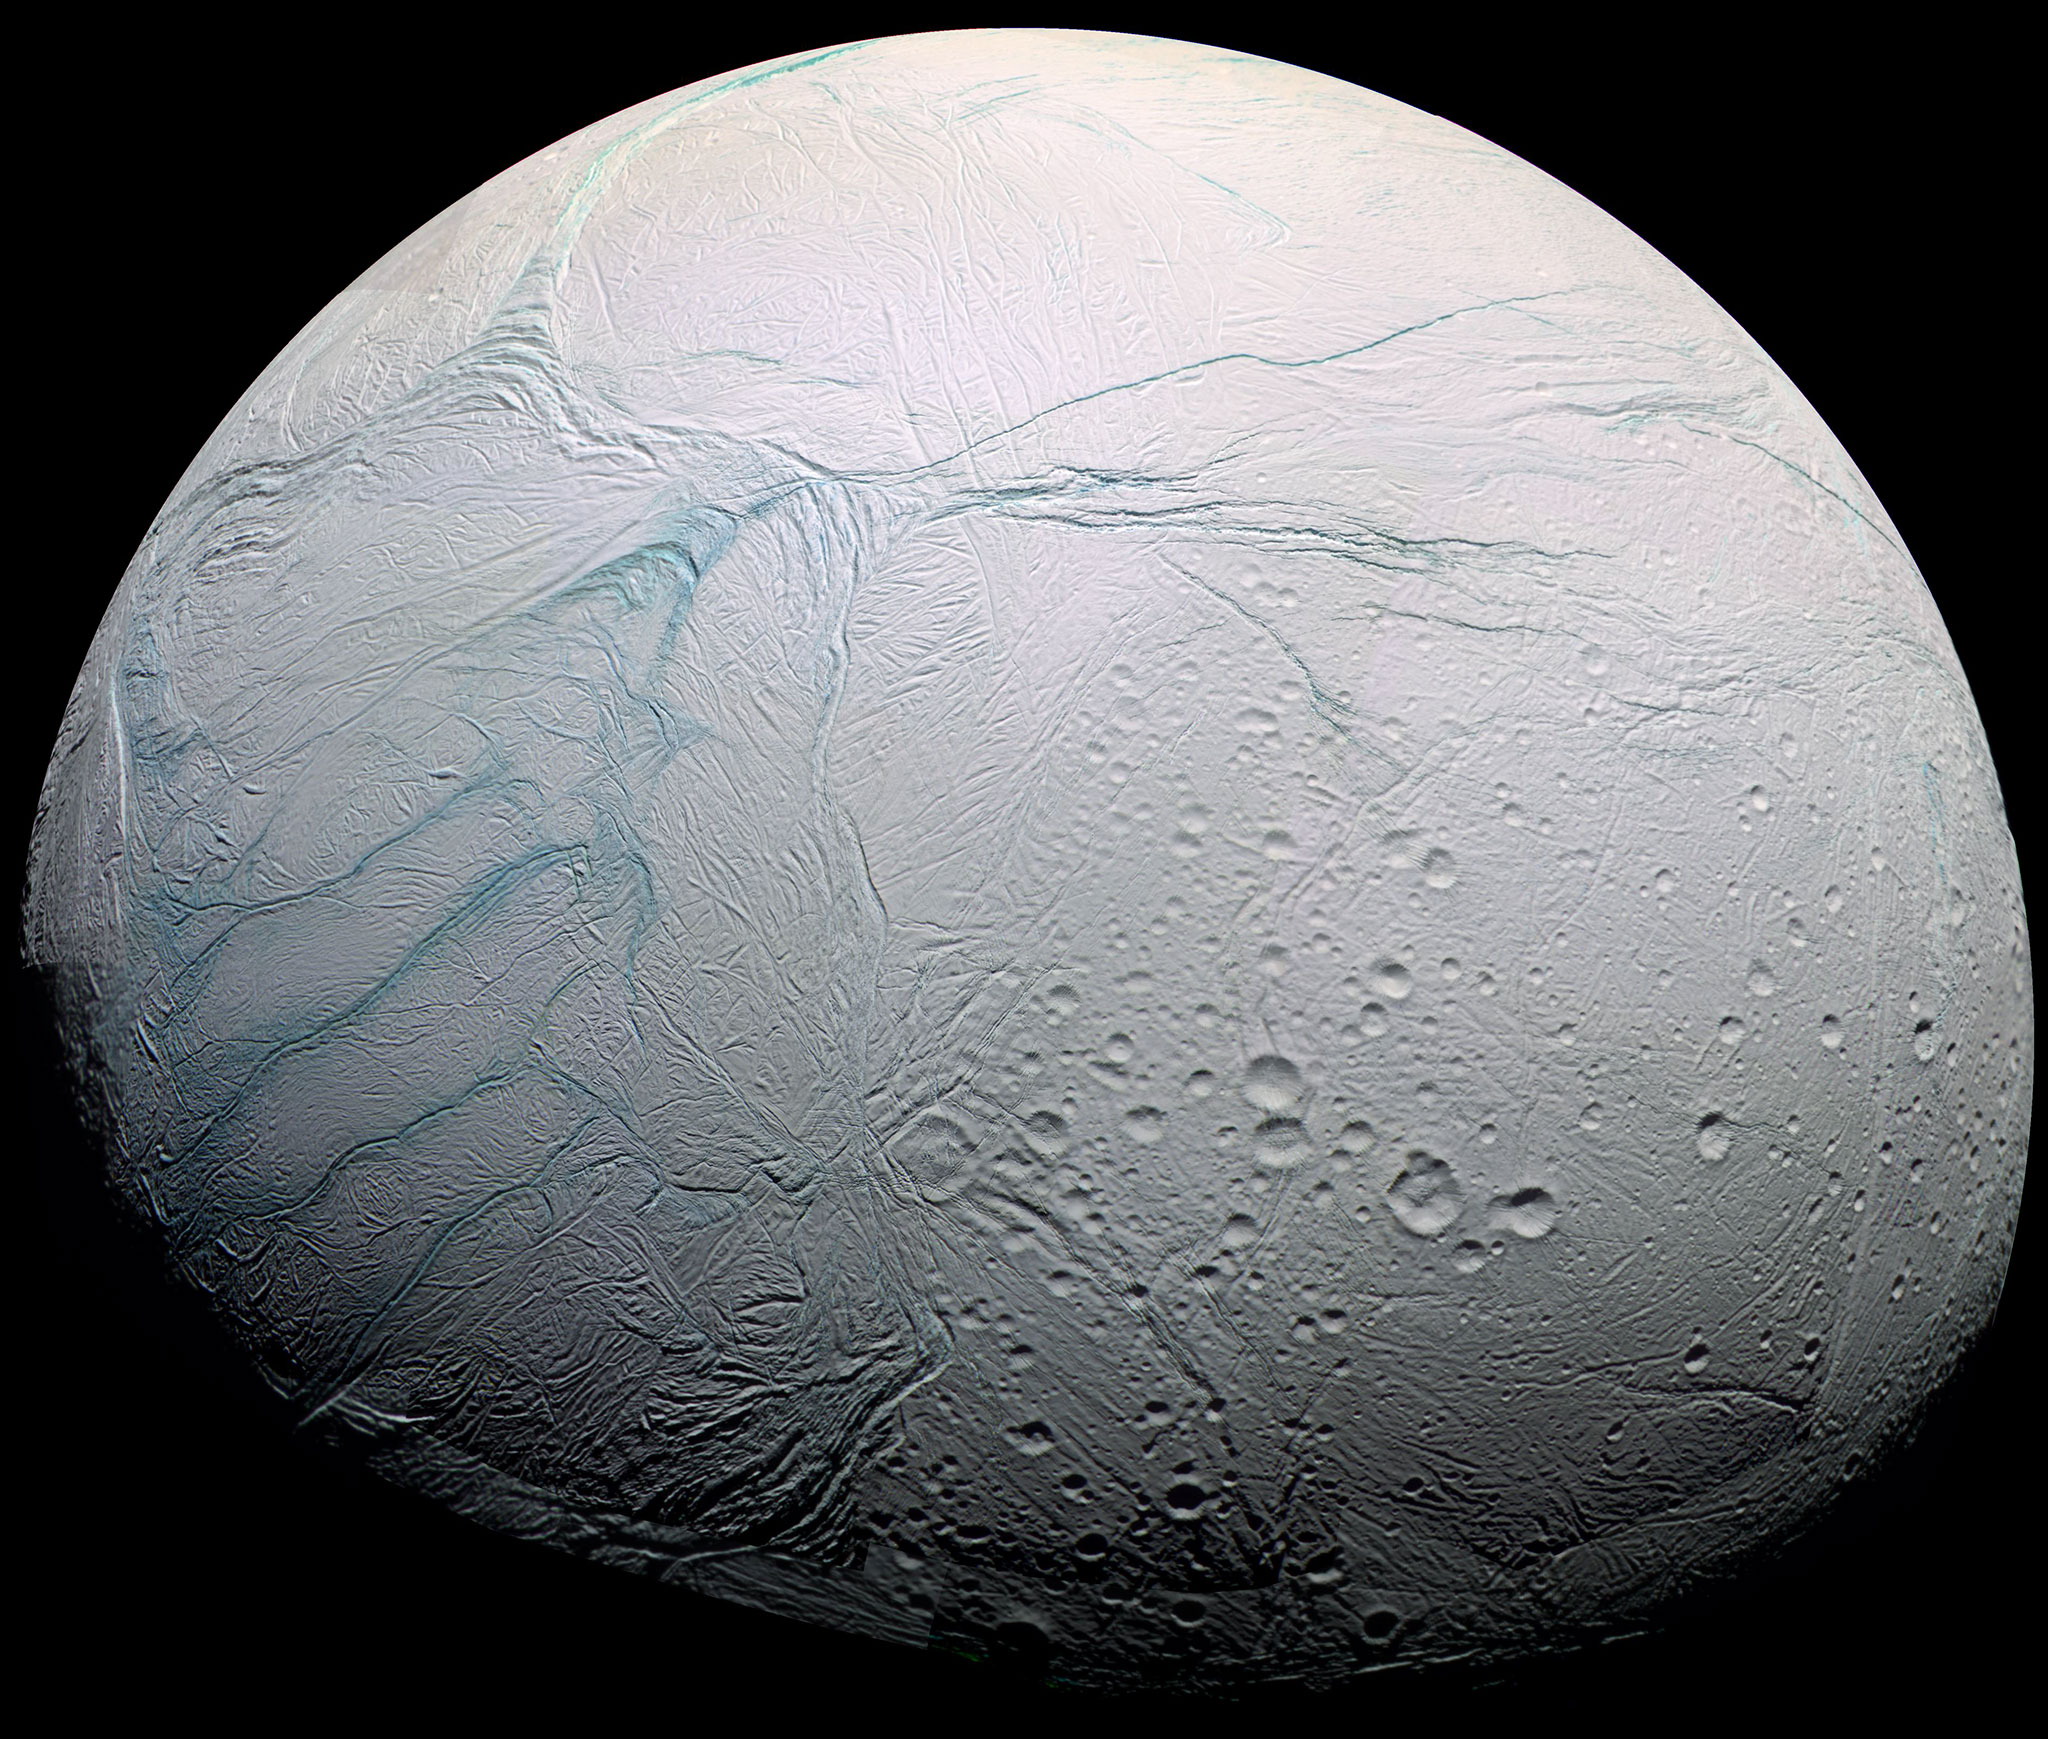 La lune Encelade photographiée par Cassini. Selon un nouveau modèle, l’épaisseur de la banquise de ce satellite de Saturne de 500 km de diamètre atteint 35 km au niveau de son équateur et moins de 5 km dans la région active du pôle sud (rayures à gauche sur l'image) où sont observés des geysers. © Nasa, ESA, JPL, Cassini Imaging Team, SSI